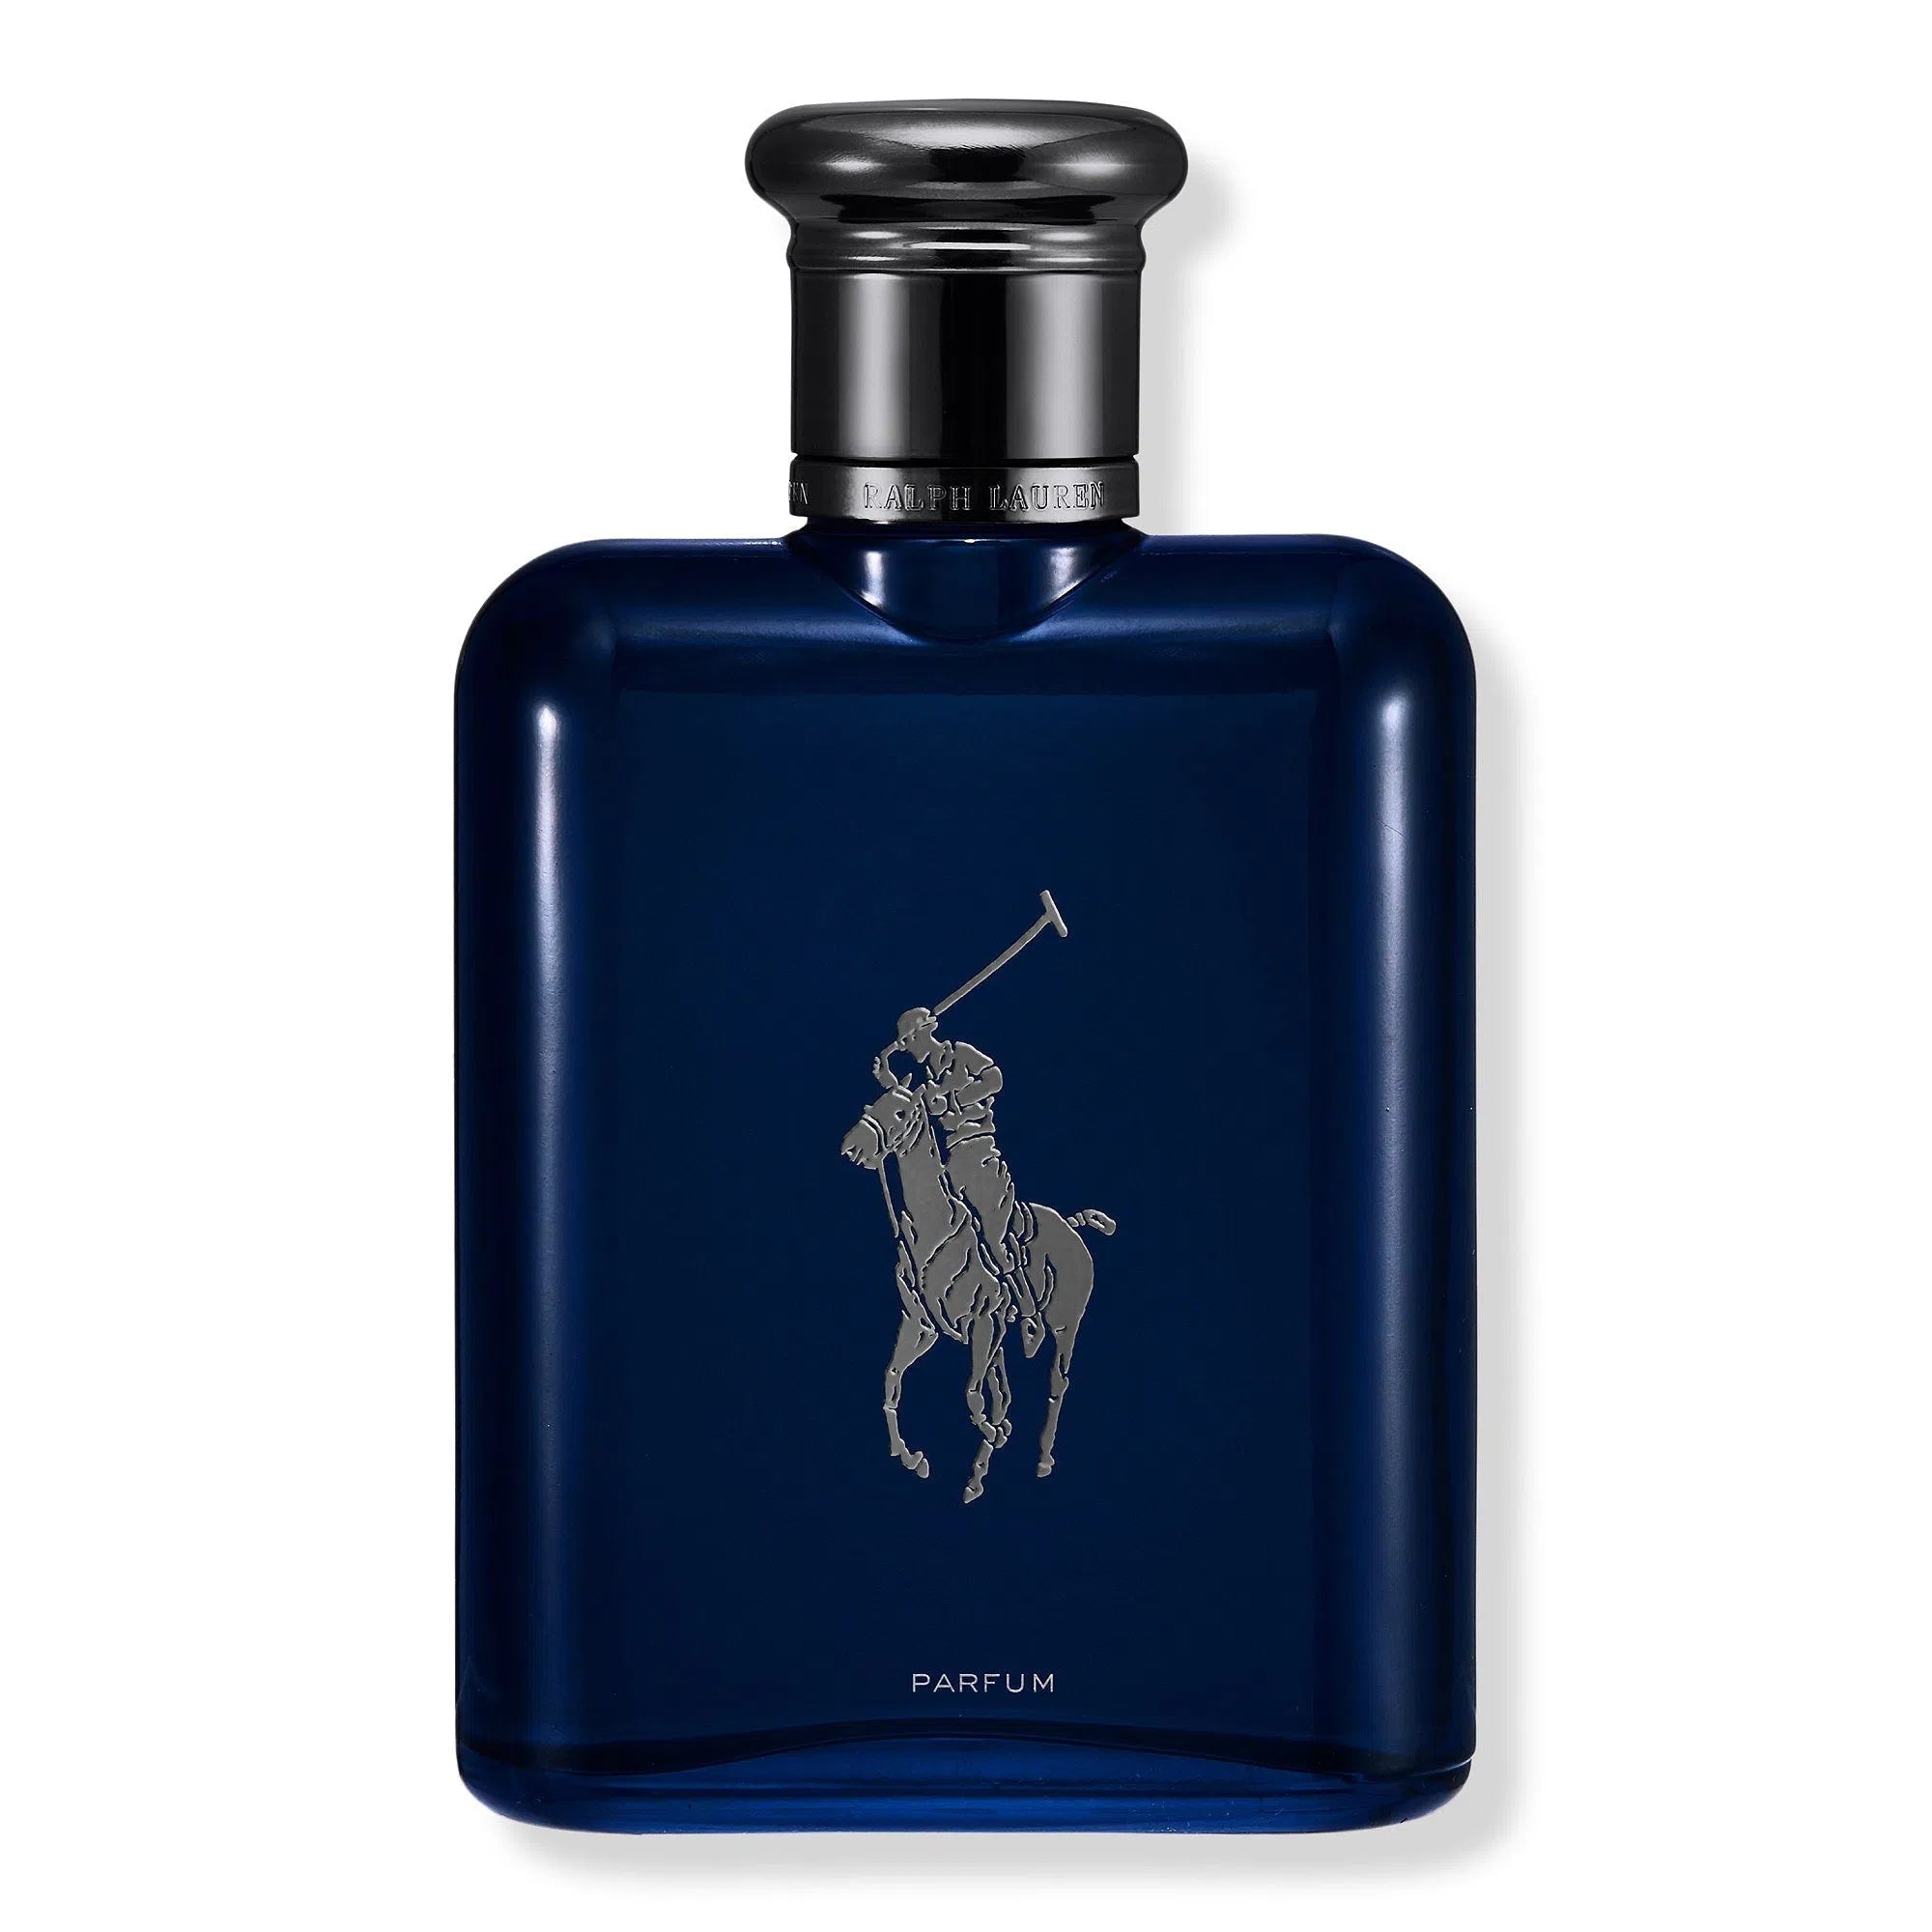 Perfume Ralph Lauren Polo Blue Parfum (M) / 75 ml - 3605972697028- Prive Perfumes Honduras